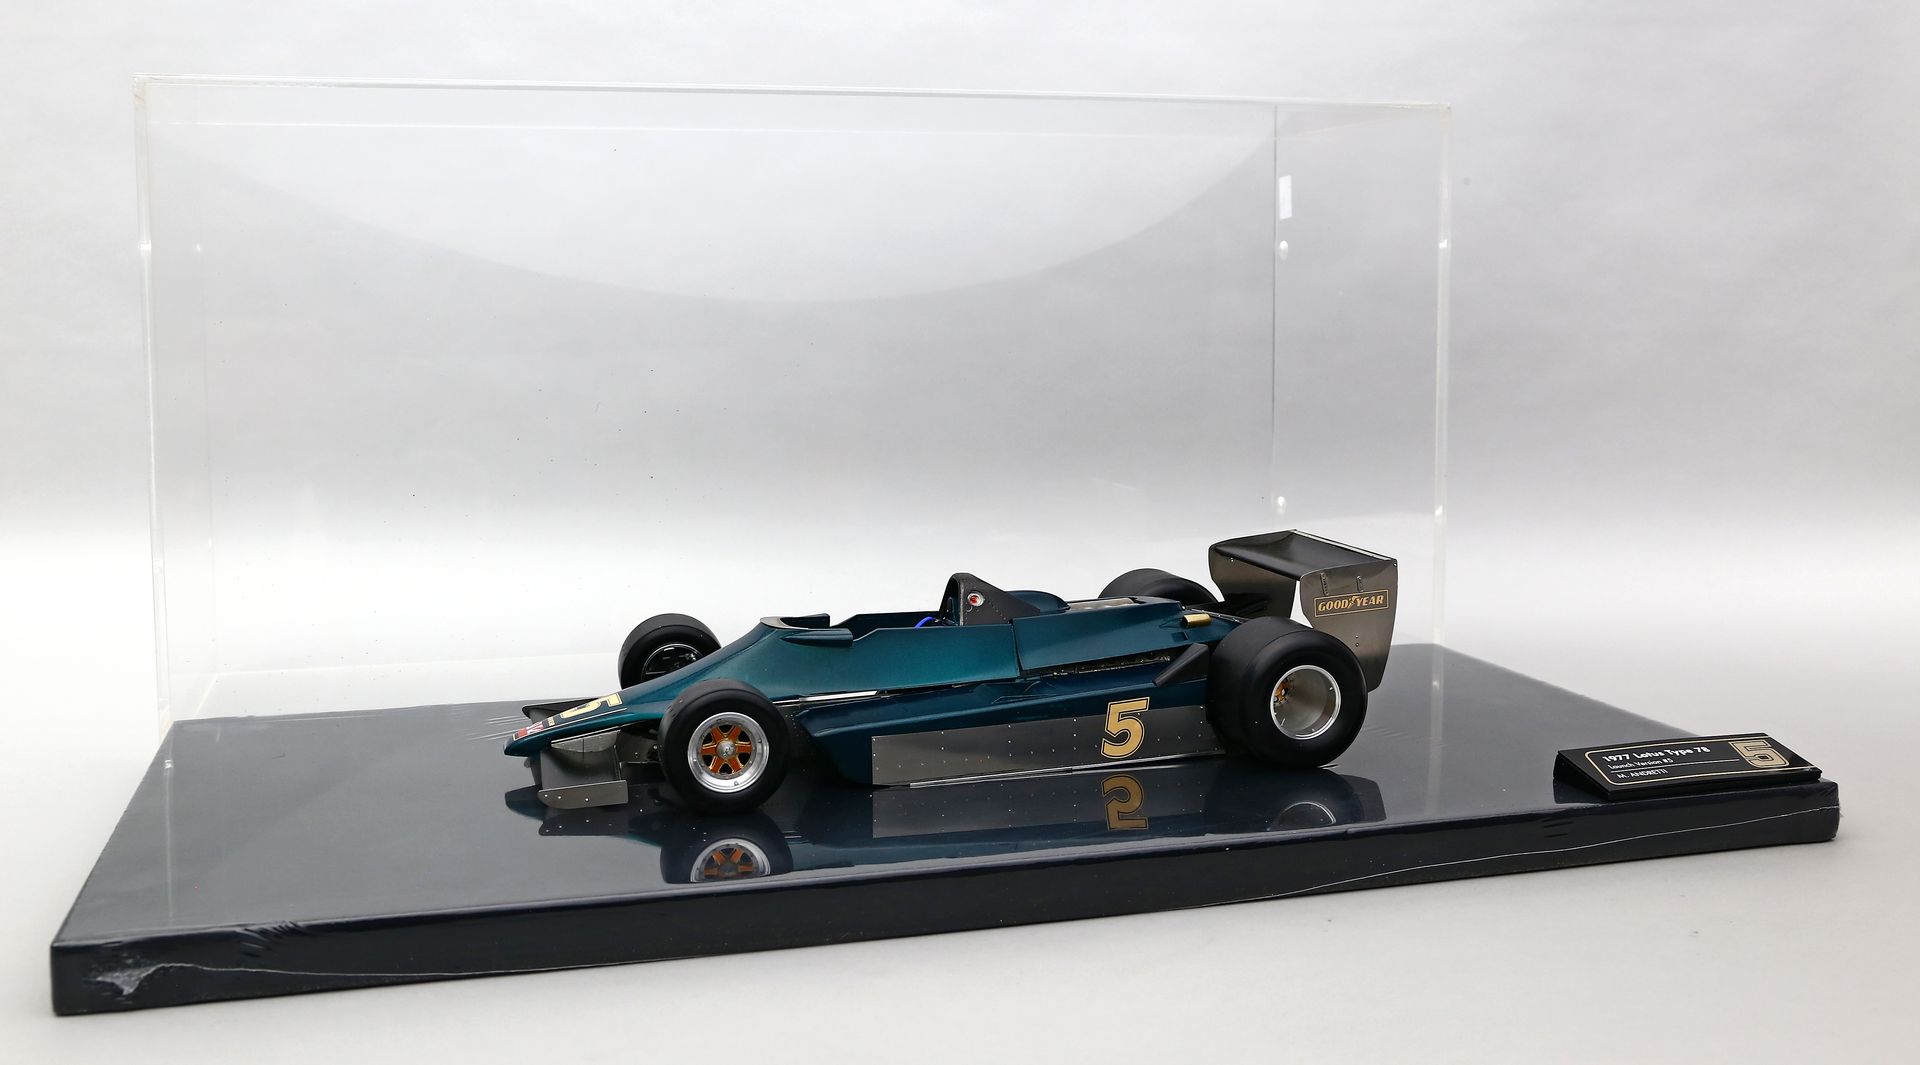 Modellauto "Rennwagen Team Lotus", 1:12.